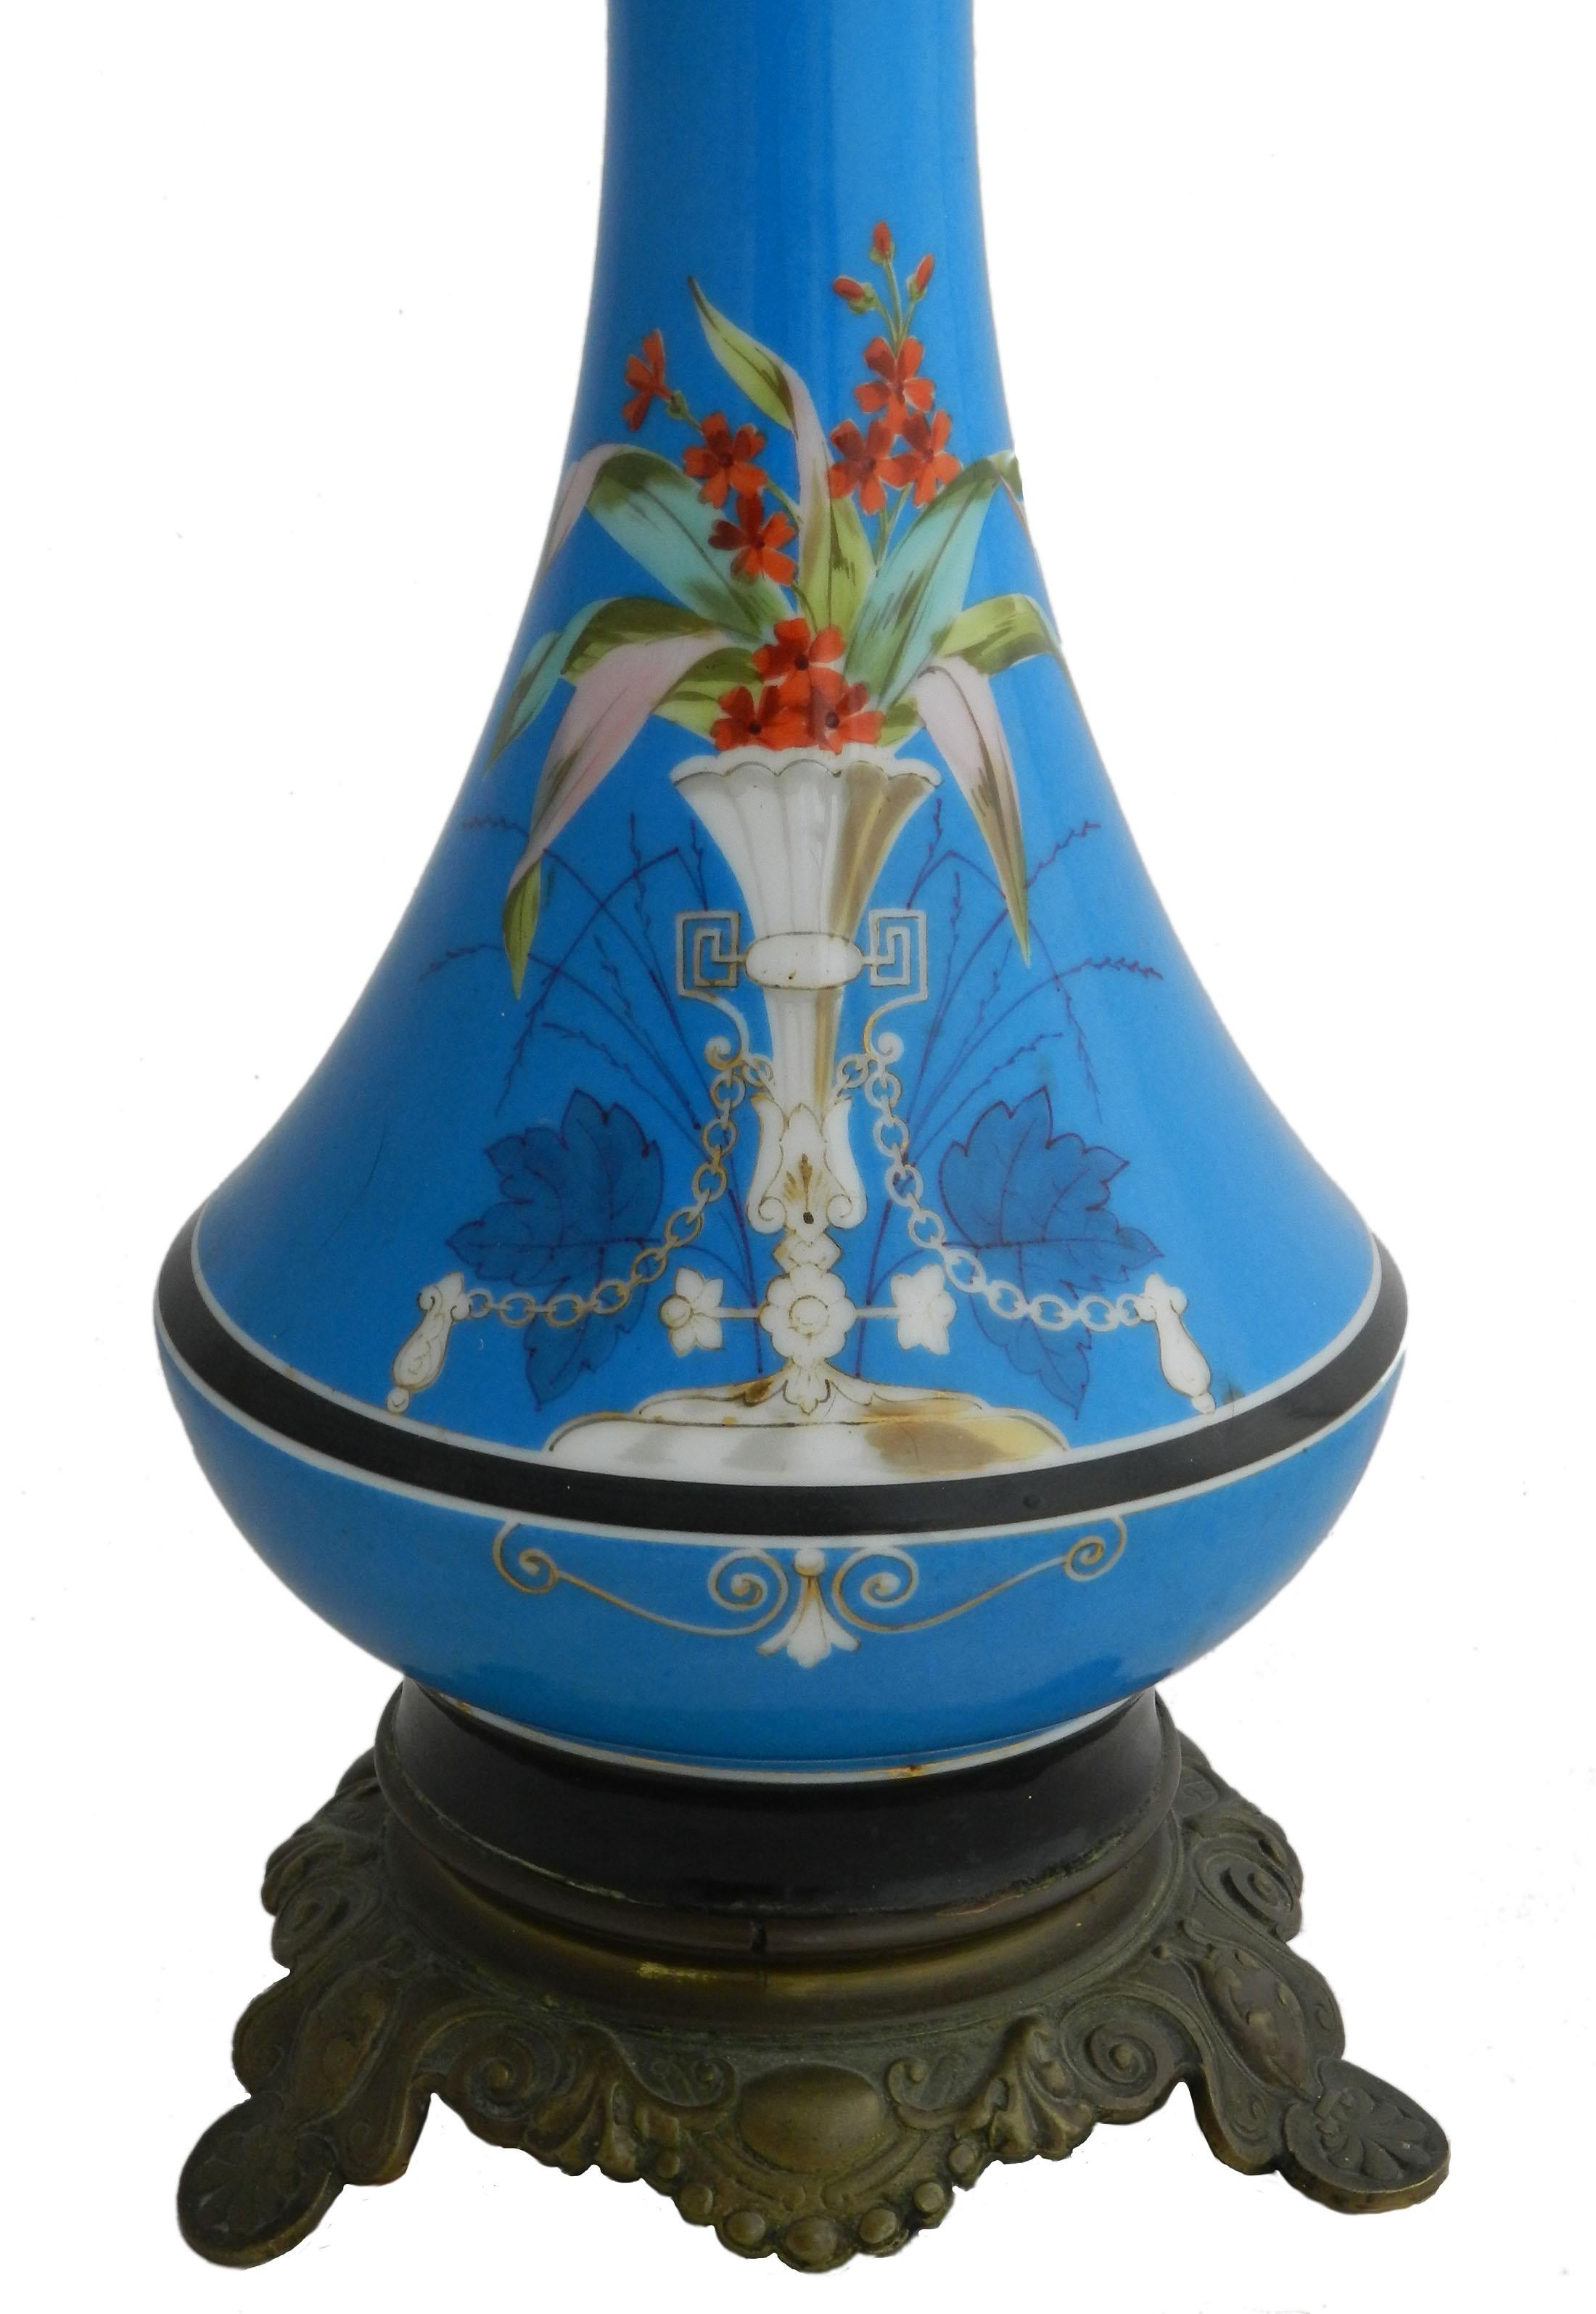 Antike Lampe Porzellan Licht Französisch c1890
Es hat einen Sockel mit Blumen und eine ungewöhnliche, atemberaubende Farbbasis
Der Lampenschirm wird nicht mitgeliefert
Diese wird neu verdrahtet und nach den Normen der USA oder des Vereinigten